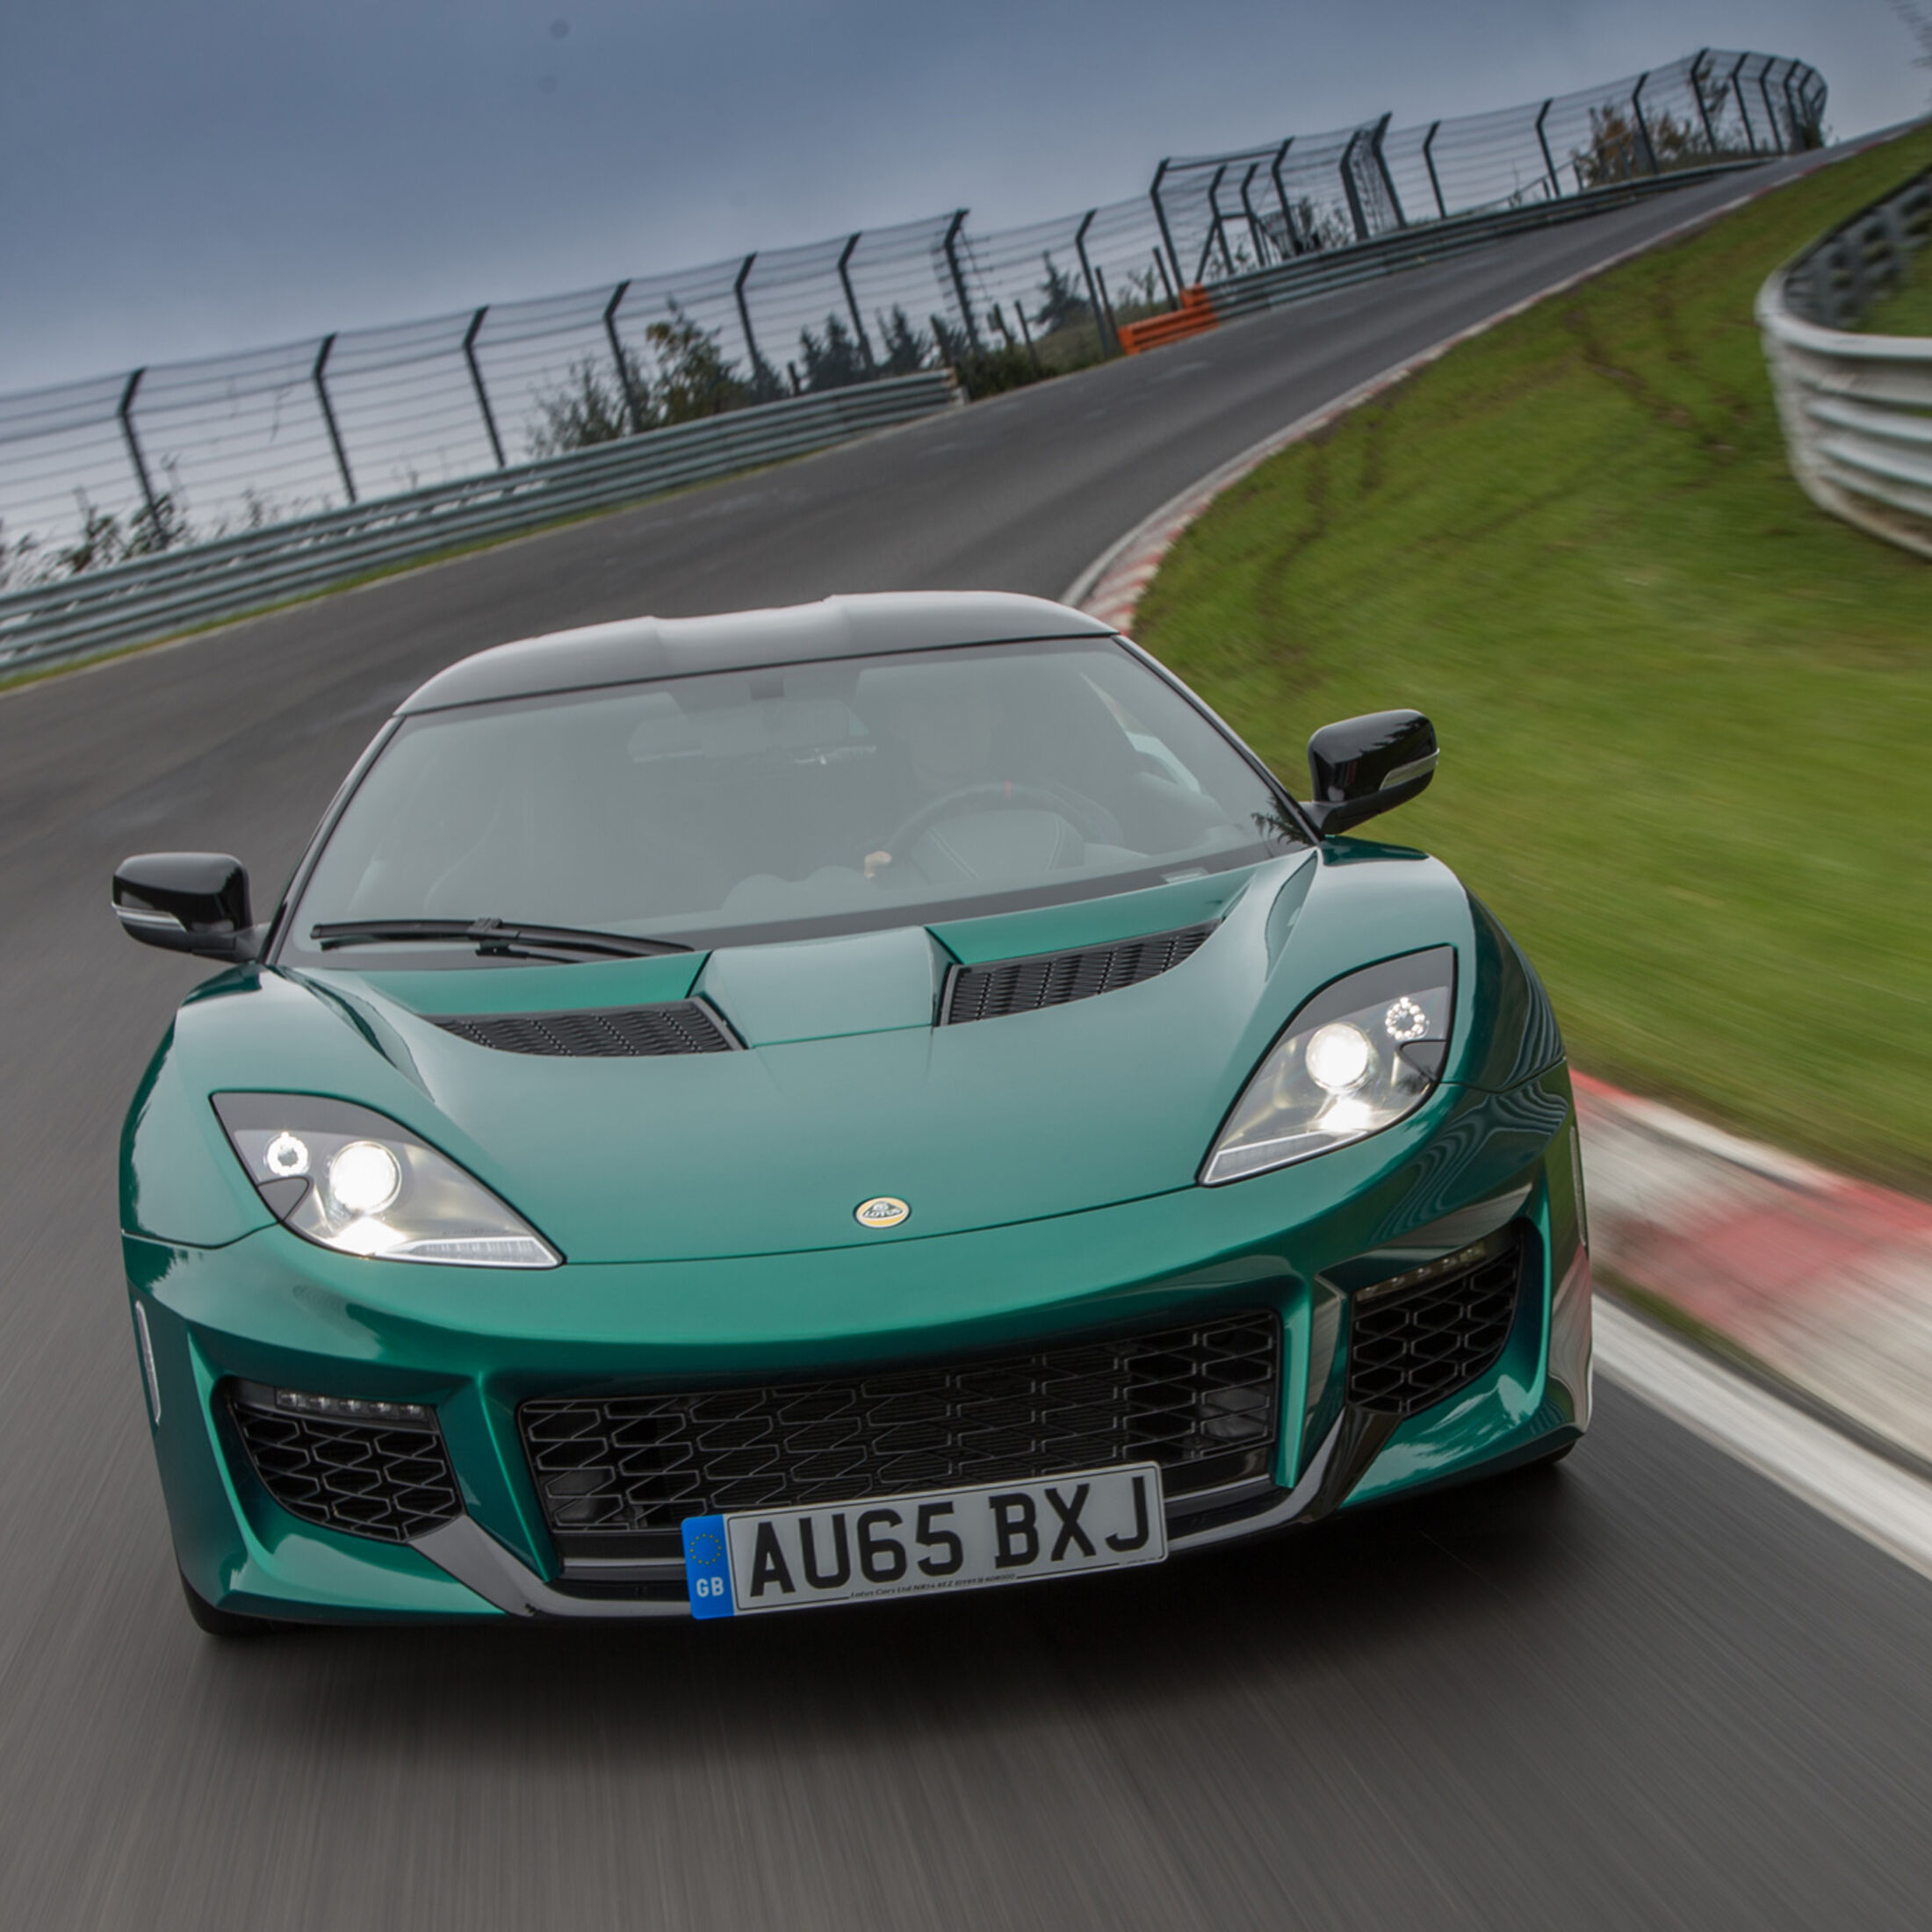 Fahrbericht Lotus Evora 400: Dem Geschwindigkeitswarner sei Dank